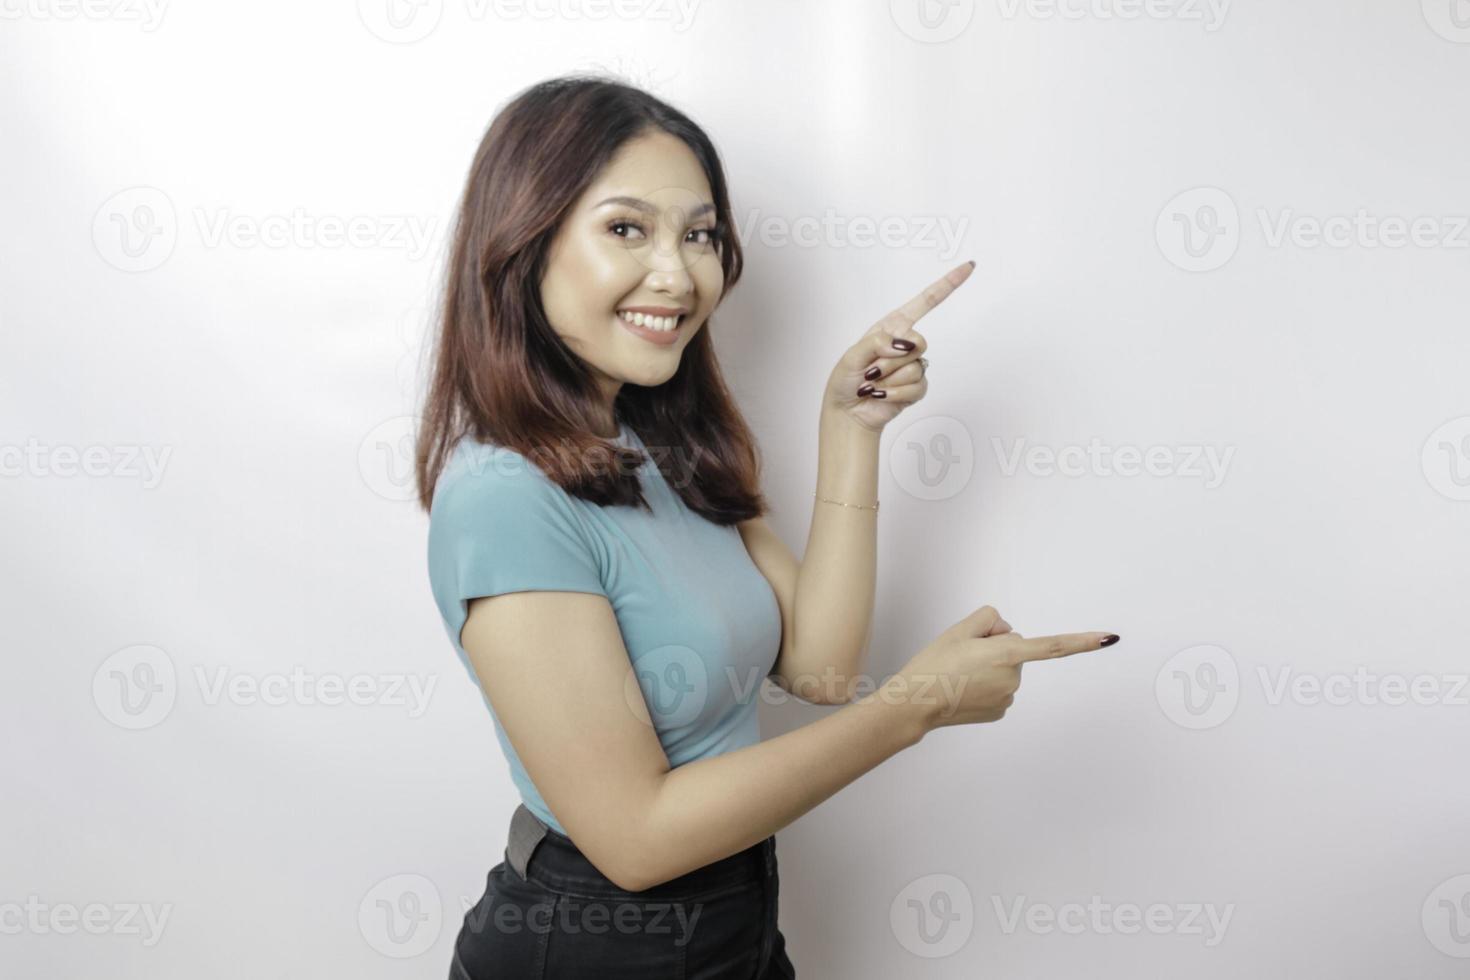 Aufgeregte asiatische Frau mit blauem T-Shirt, die auf den Kopierbereich neben ihr zeigt, isoliert durch weißen Hintergrund foto